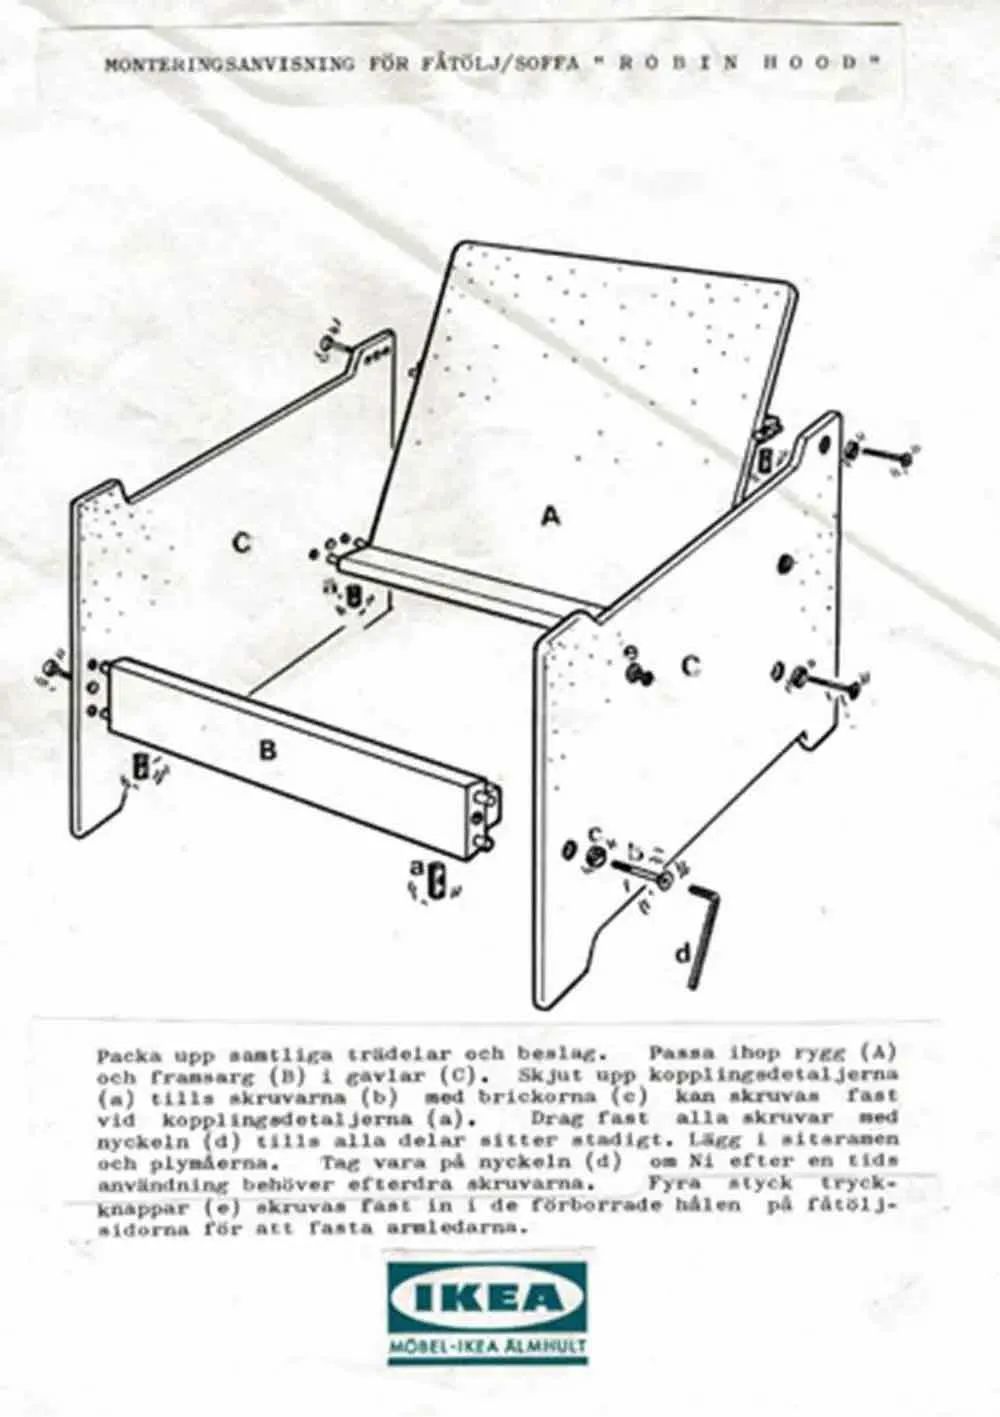 1960 年代宜家 Robin 扶手椅的说明书. 图片来自：Justin Zhuang